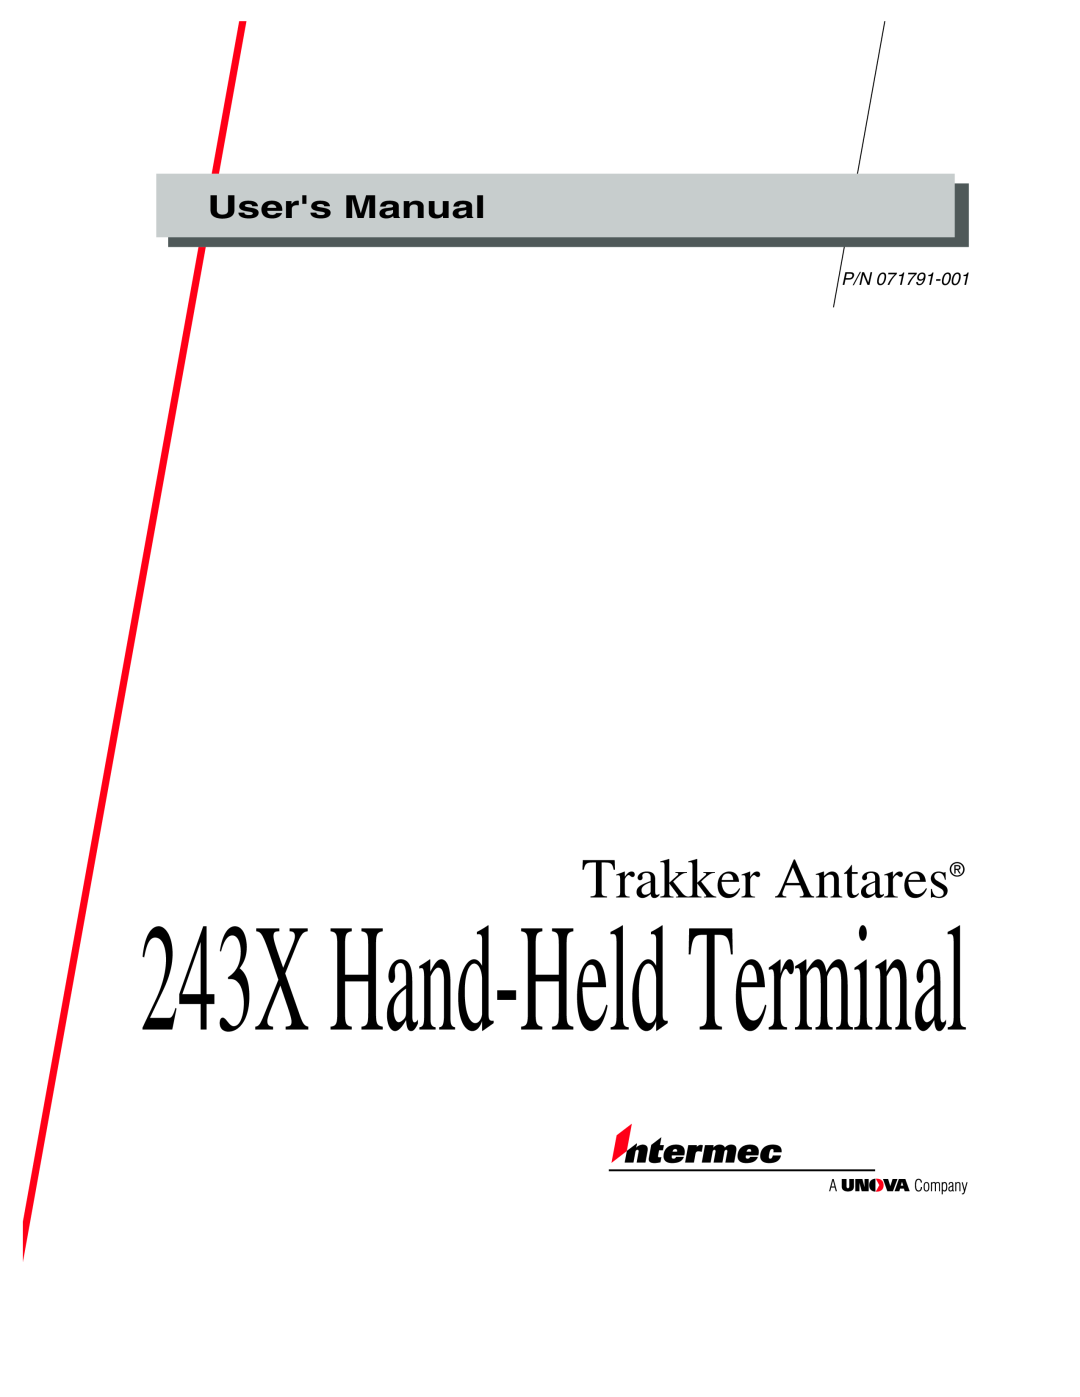 IBM user manual 243X Hand-Held Terminal, Trakker Antares, Users Manual 